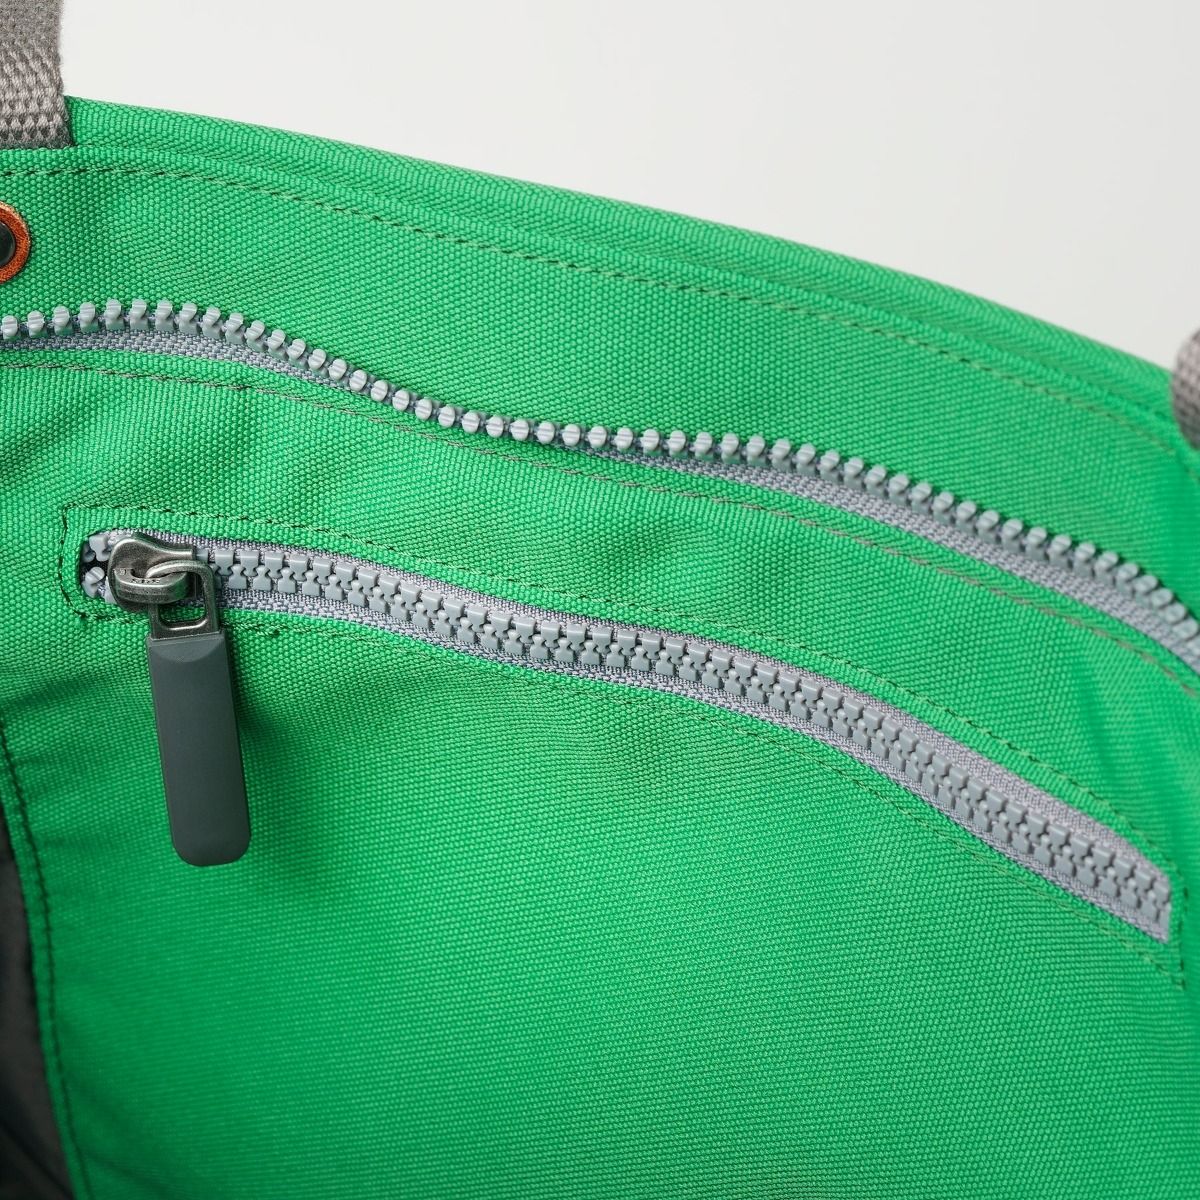 Roka Trafalgar Tote vegan bag in Mountain Green inside pocket detail